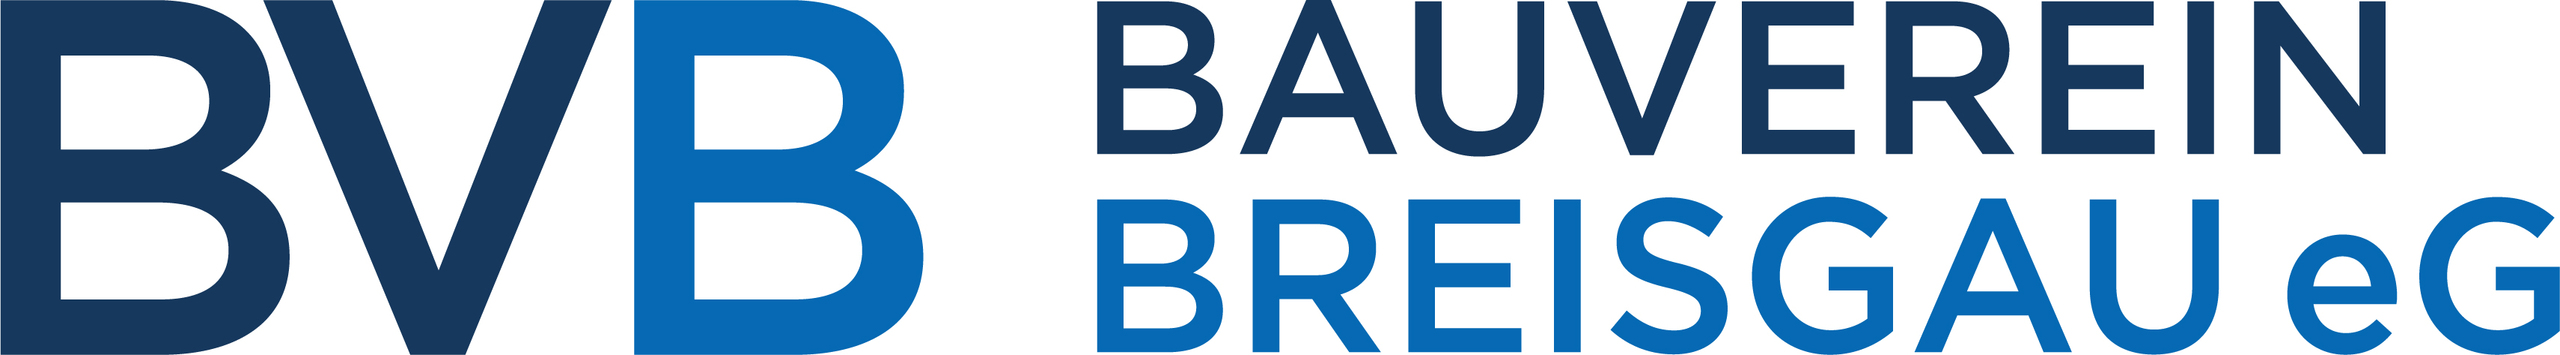 Bauverein Breisgau eG